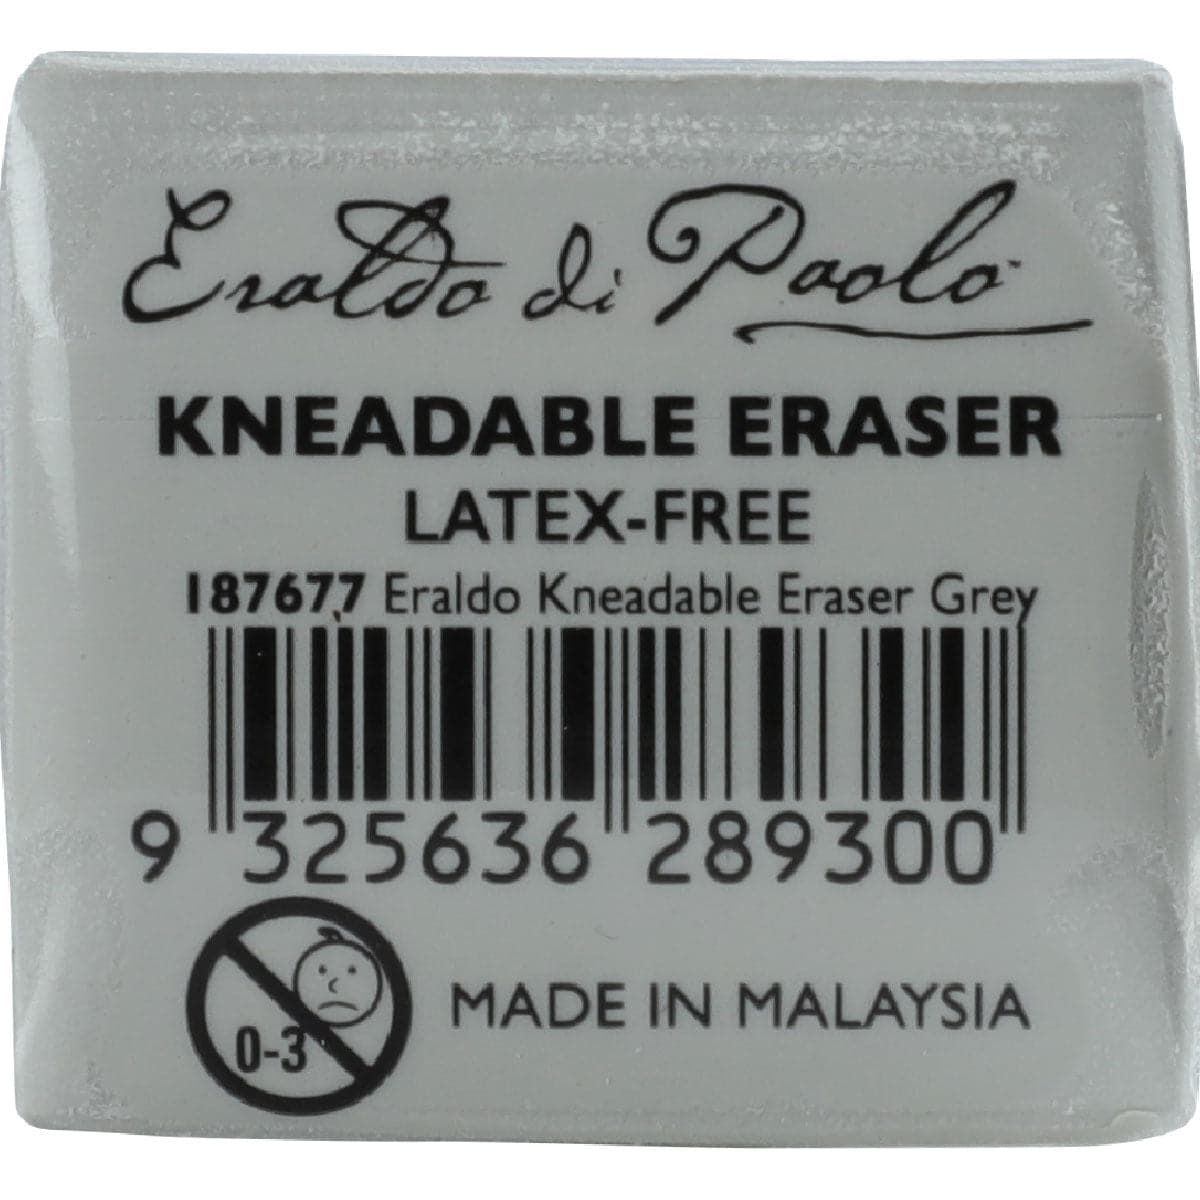 Image of Eraldo Di Paolo Kneadable Eraser Grey